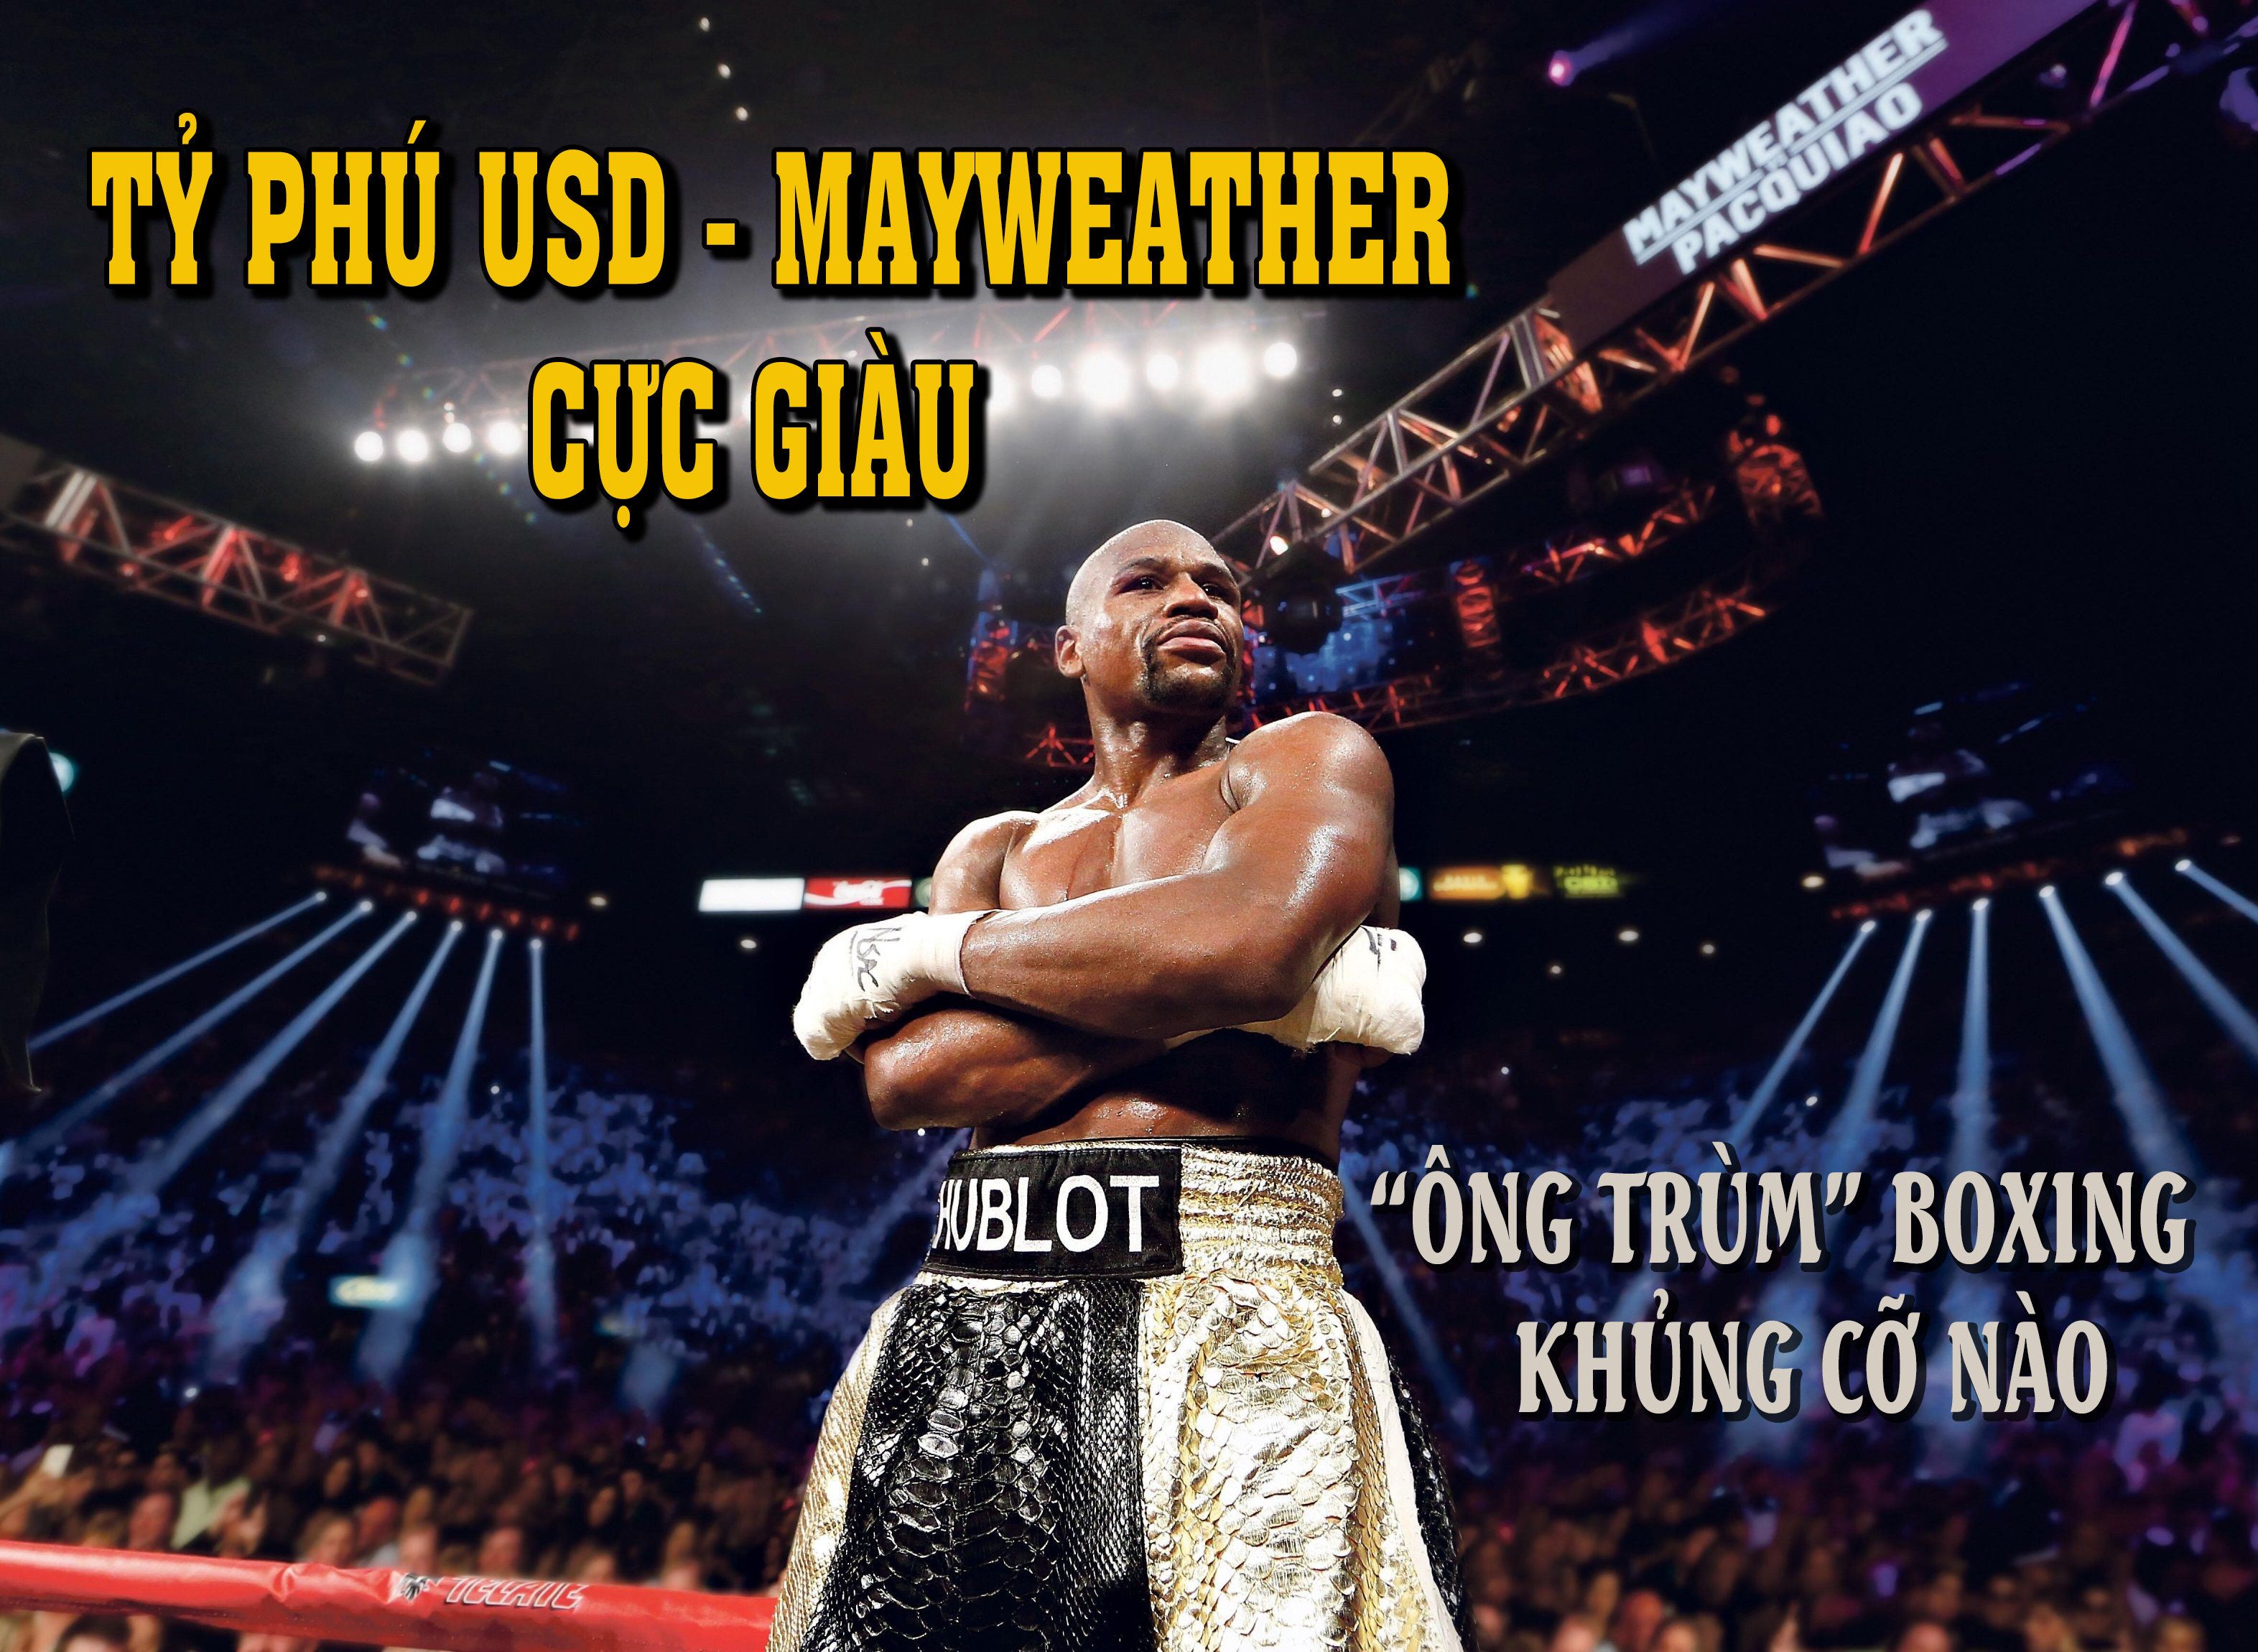 Tỷ phú USD - Mayweather cực giàu: &#34;Ông trùm&#34; boxing “khủng” cỡ nào? - 1